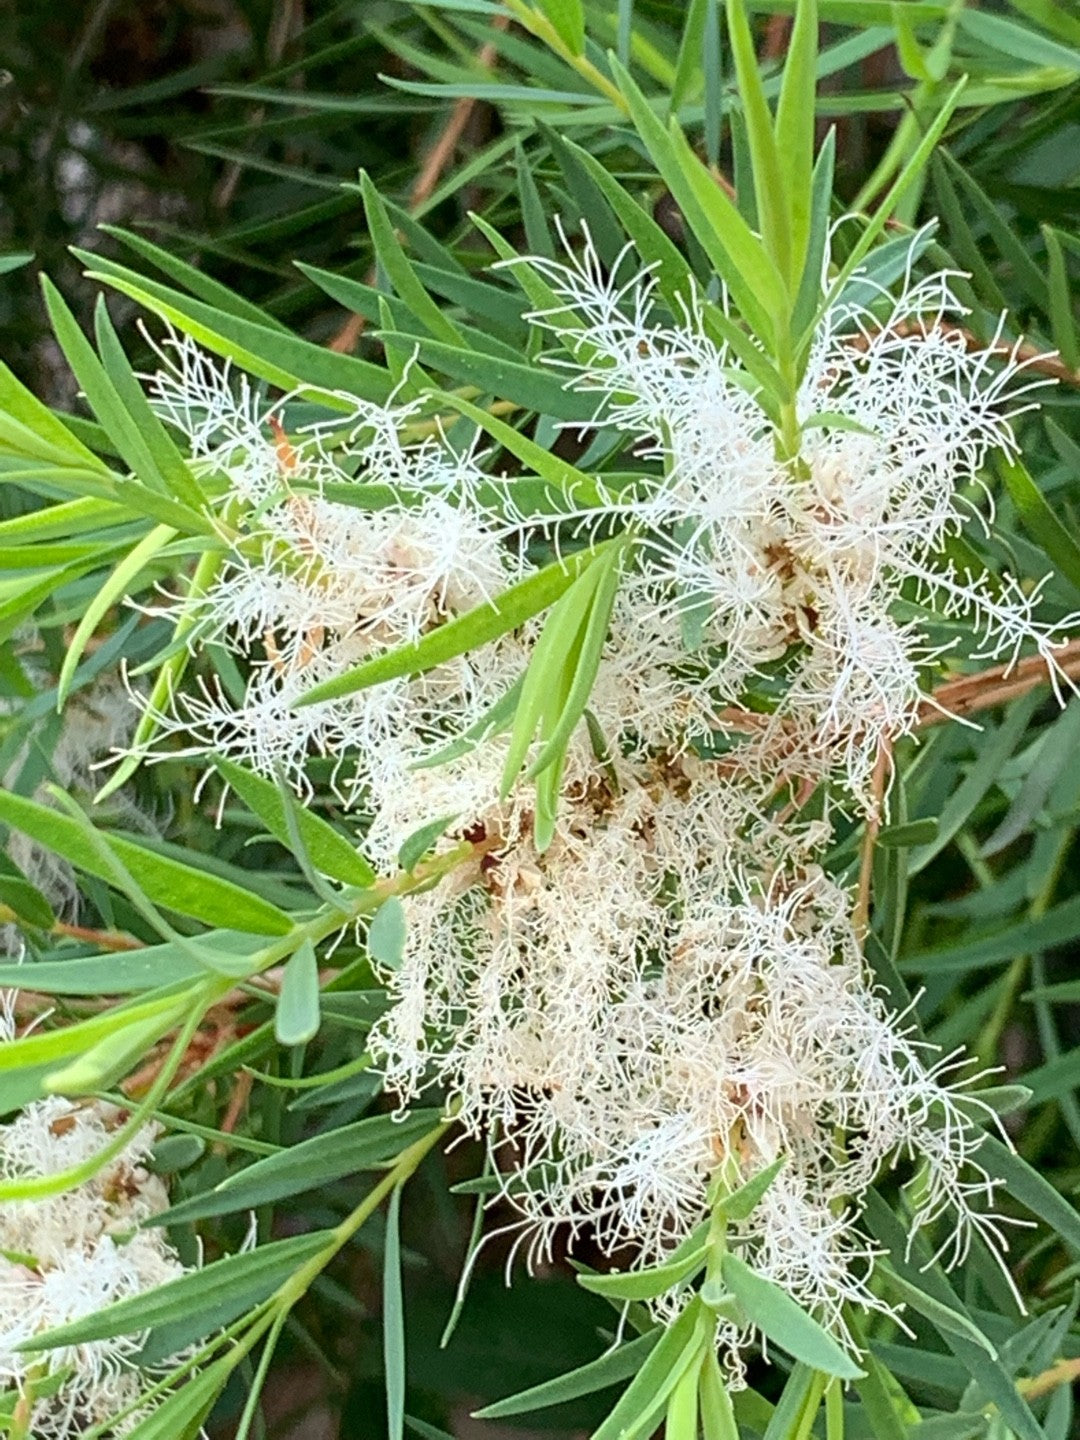 The melaleuca alternifolia plant, known as tea tree to most people.